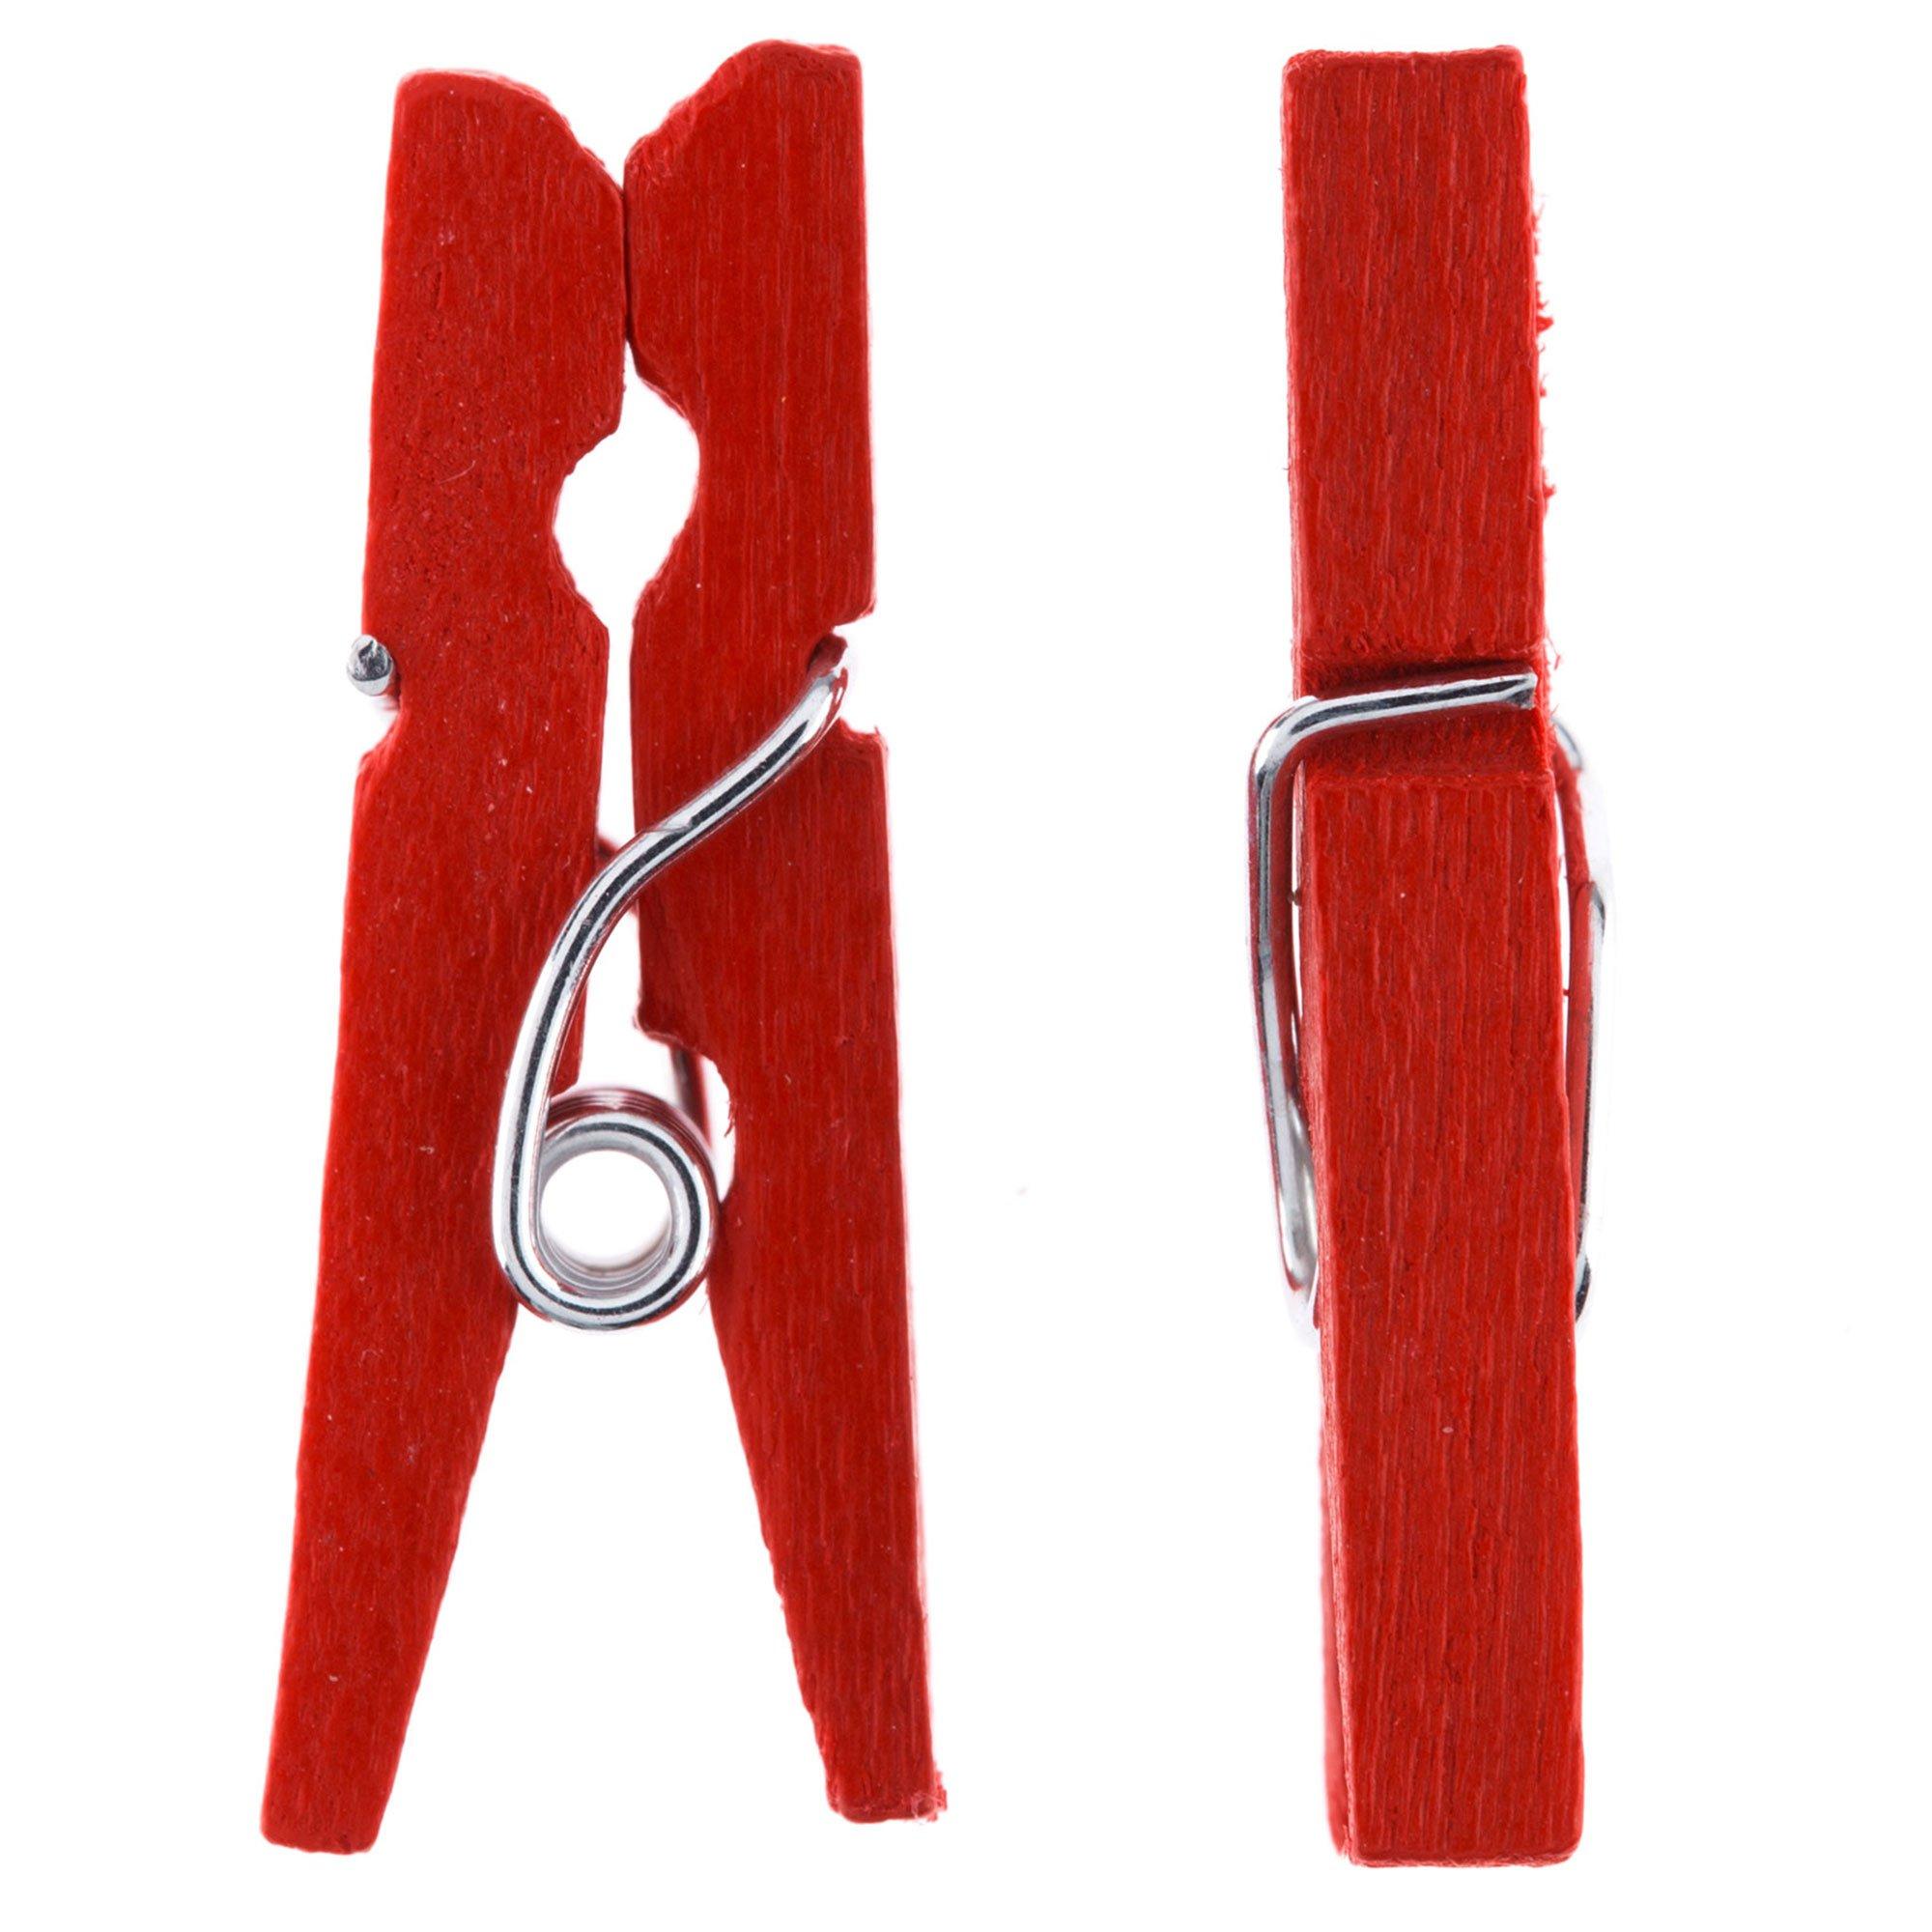 Mini clothespins (1-3/8 x 2/8) - Mini clothes pins - Craft clothes pins -  Miniature clothes pins - Decorative clothespins